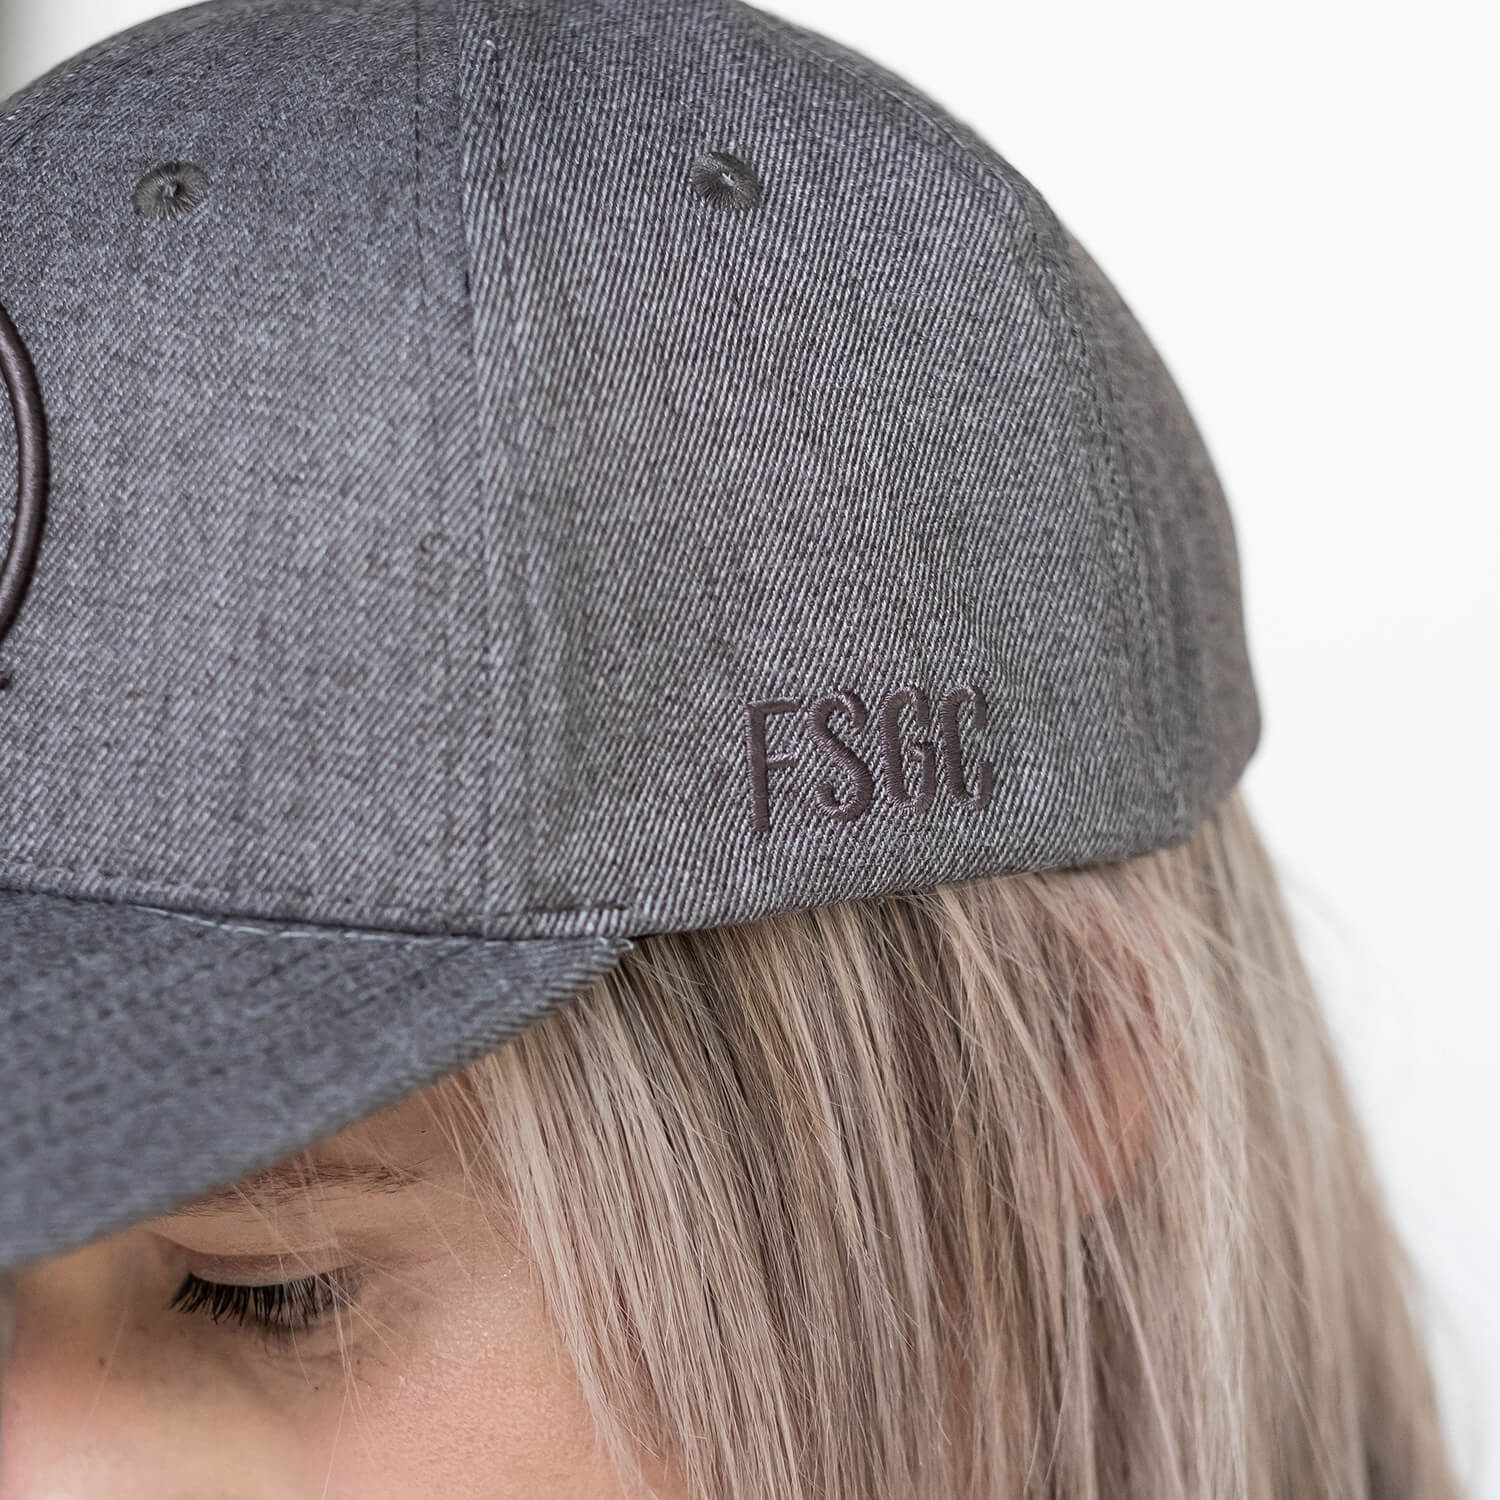 Flying Solo Gear Co | EMBLEM Cap - Heather Grey - Hats - Peak Moto